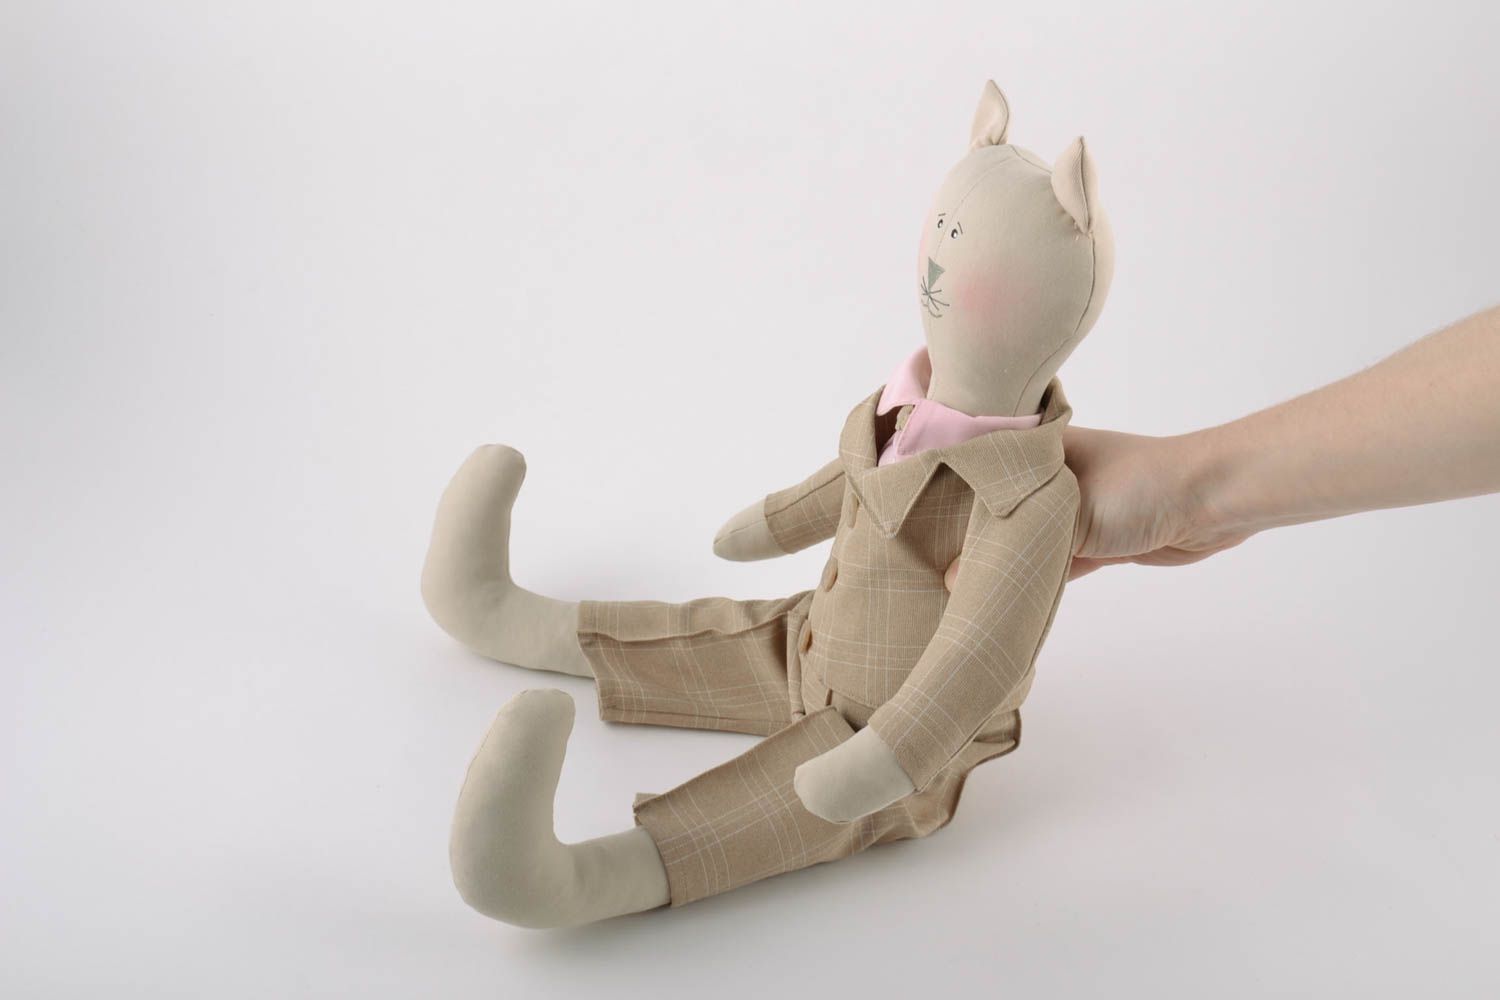 Textil Kuscheltier Kater im Anzug aus Leinen Spielzeug für Kinder  foto 2